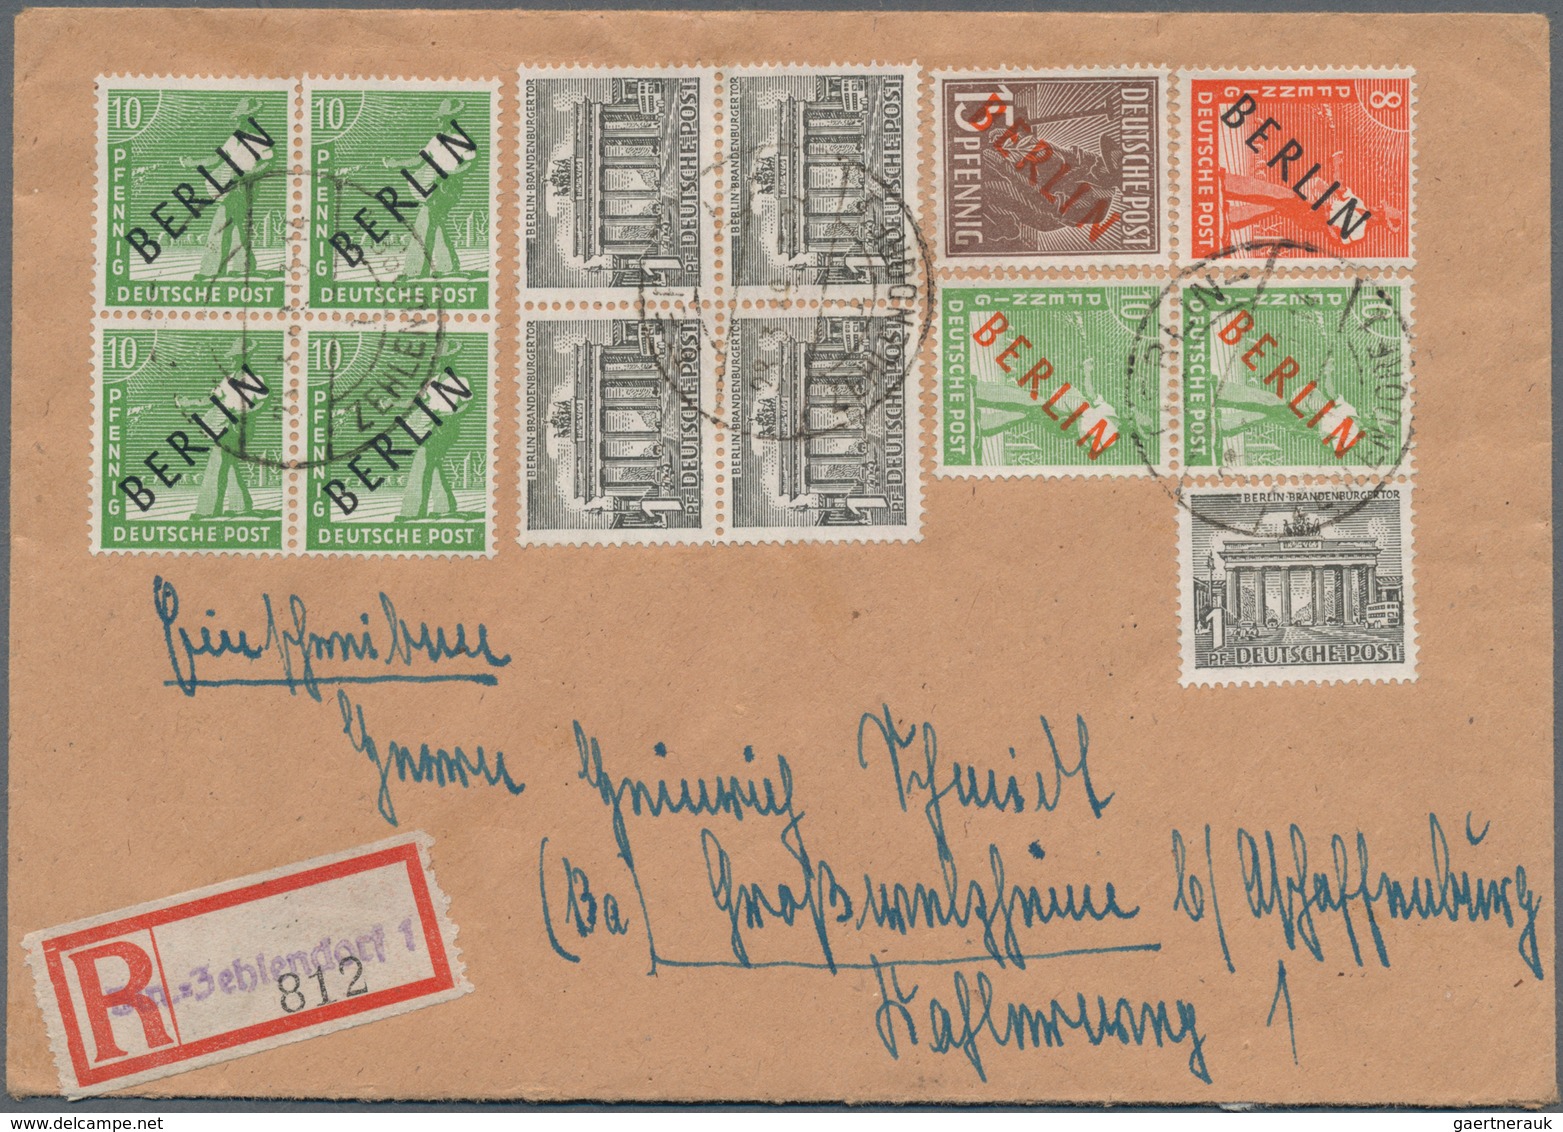 Berlin: 1947/1982, umfassende, sehr inhaltsreich und hochwertig besetzte Sammlung von ca. 350 Briefe